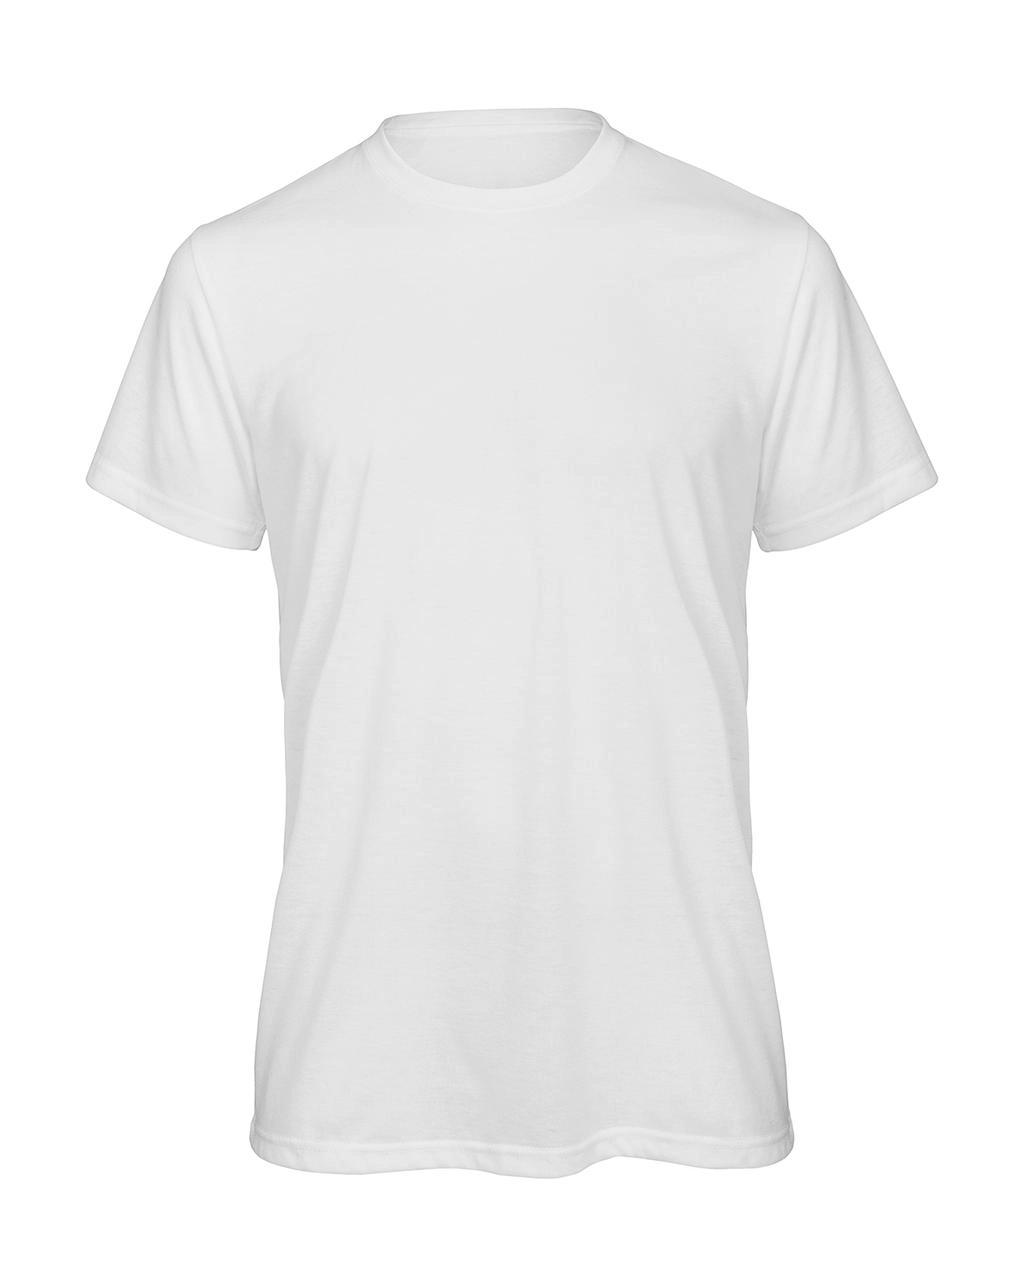 Sublimation/men T-Shirt zum Besticken und Bedrucken in der Farbe White mit Ihren Logo, Schriftzug oder Motiv.